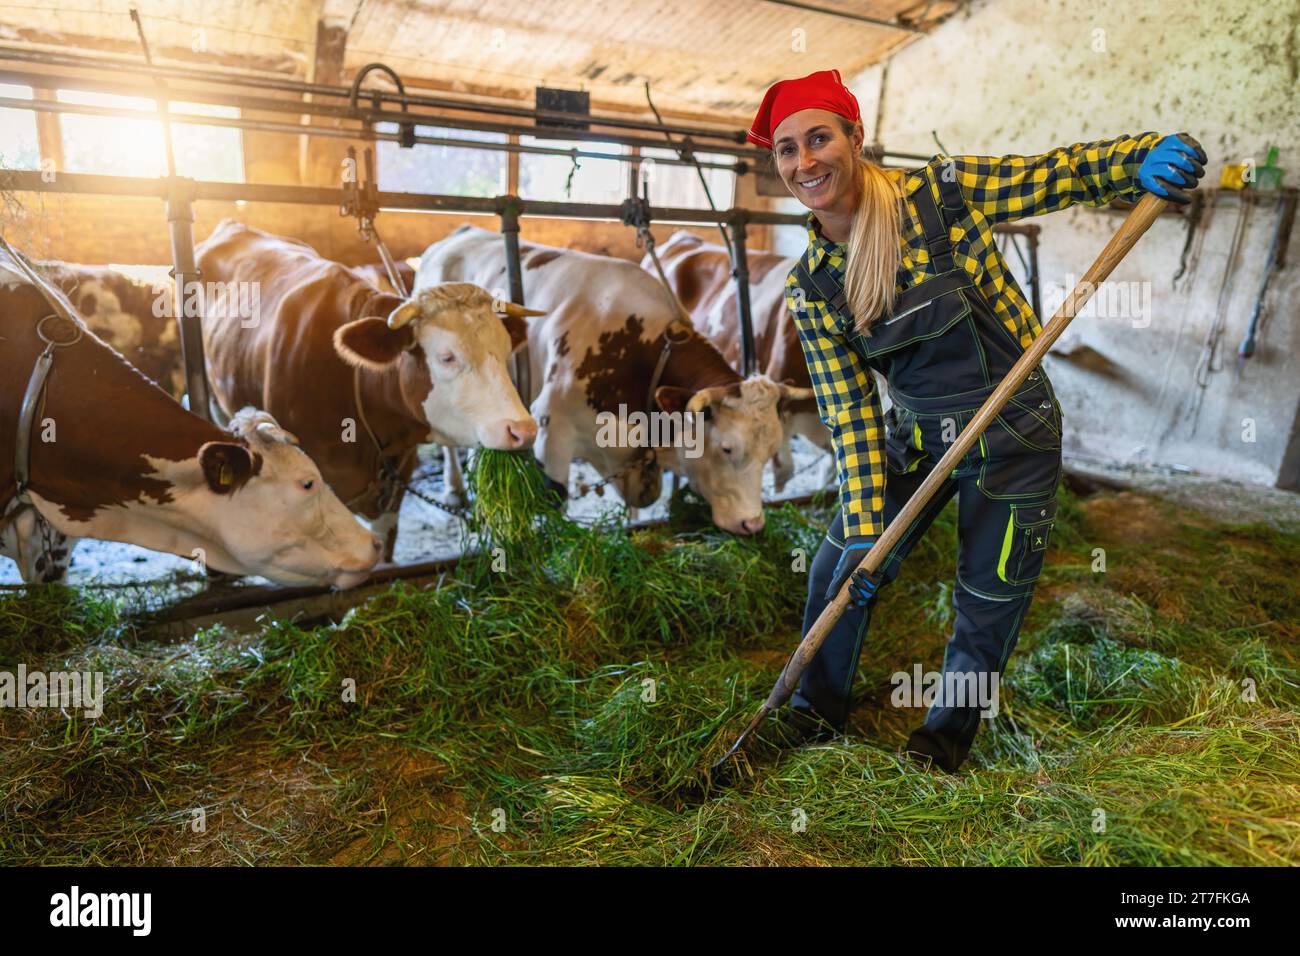 Glückliche Farmerin mit Heugabel, die Kühe in einer sonnendurchfluteten Scheune füttert Stockfoto